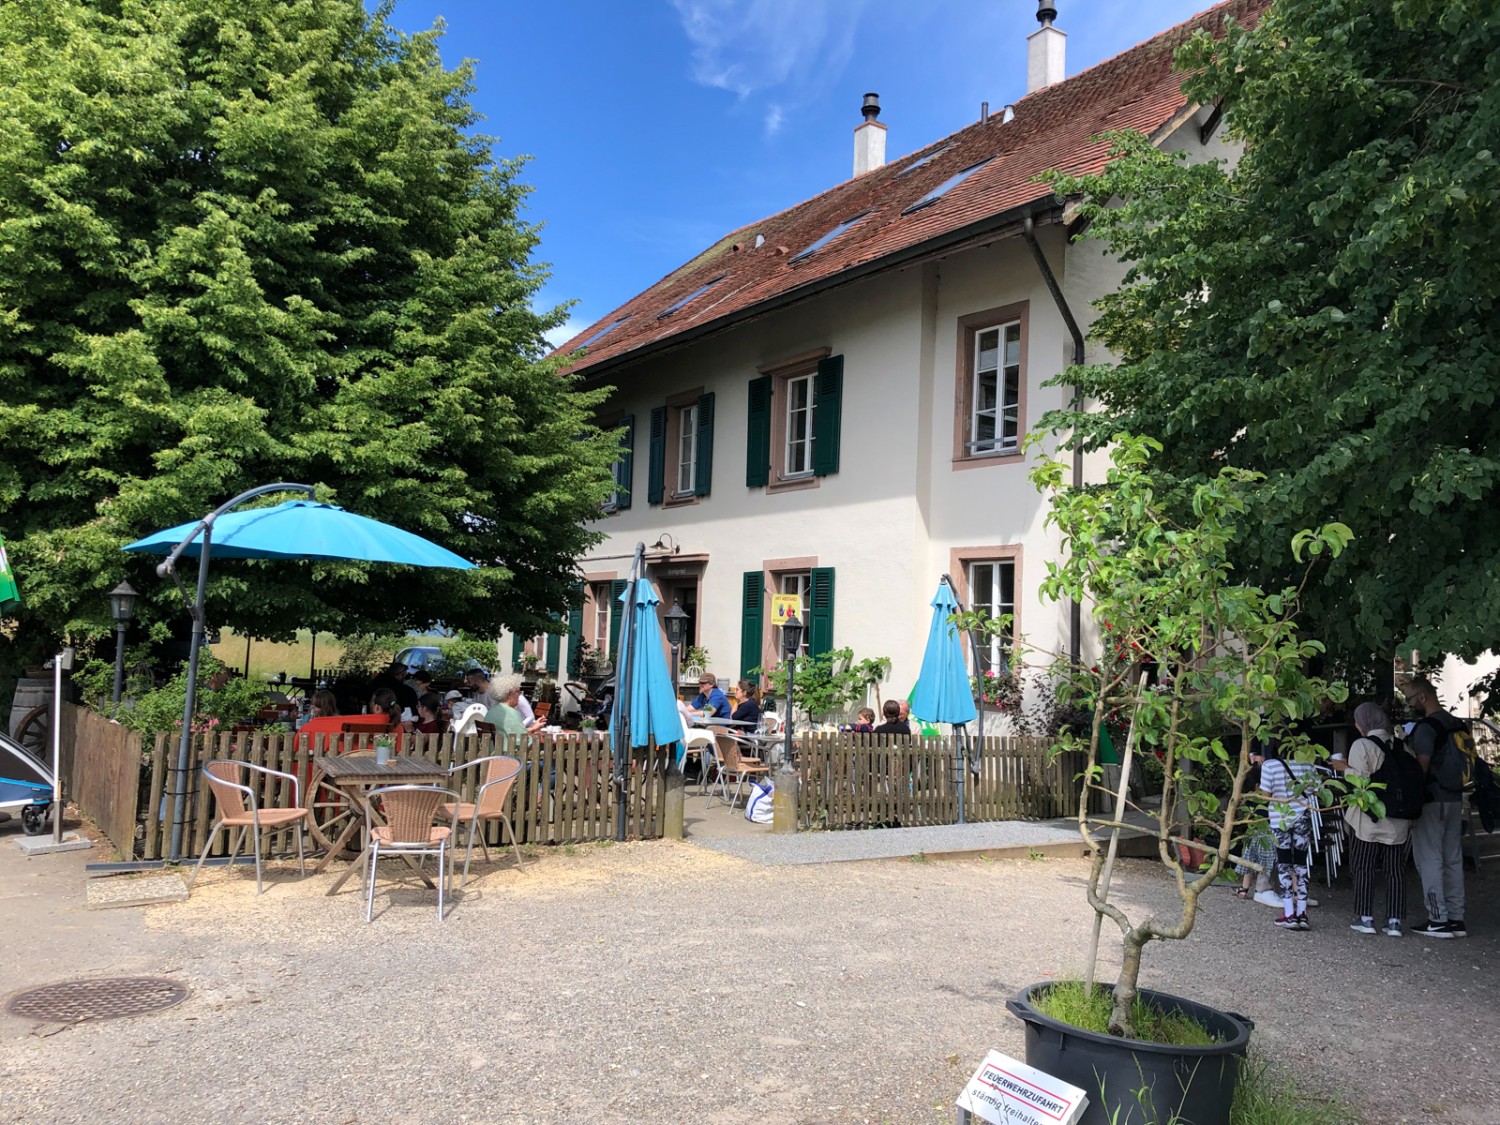 Restaurant und Buvette im Predigerhof auf dem Bruederholz. Bild: Thomas Gloor